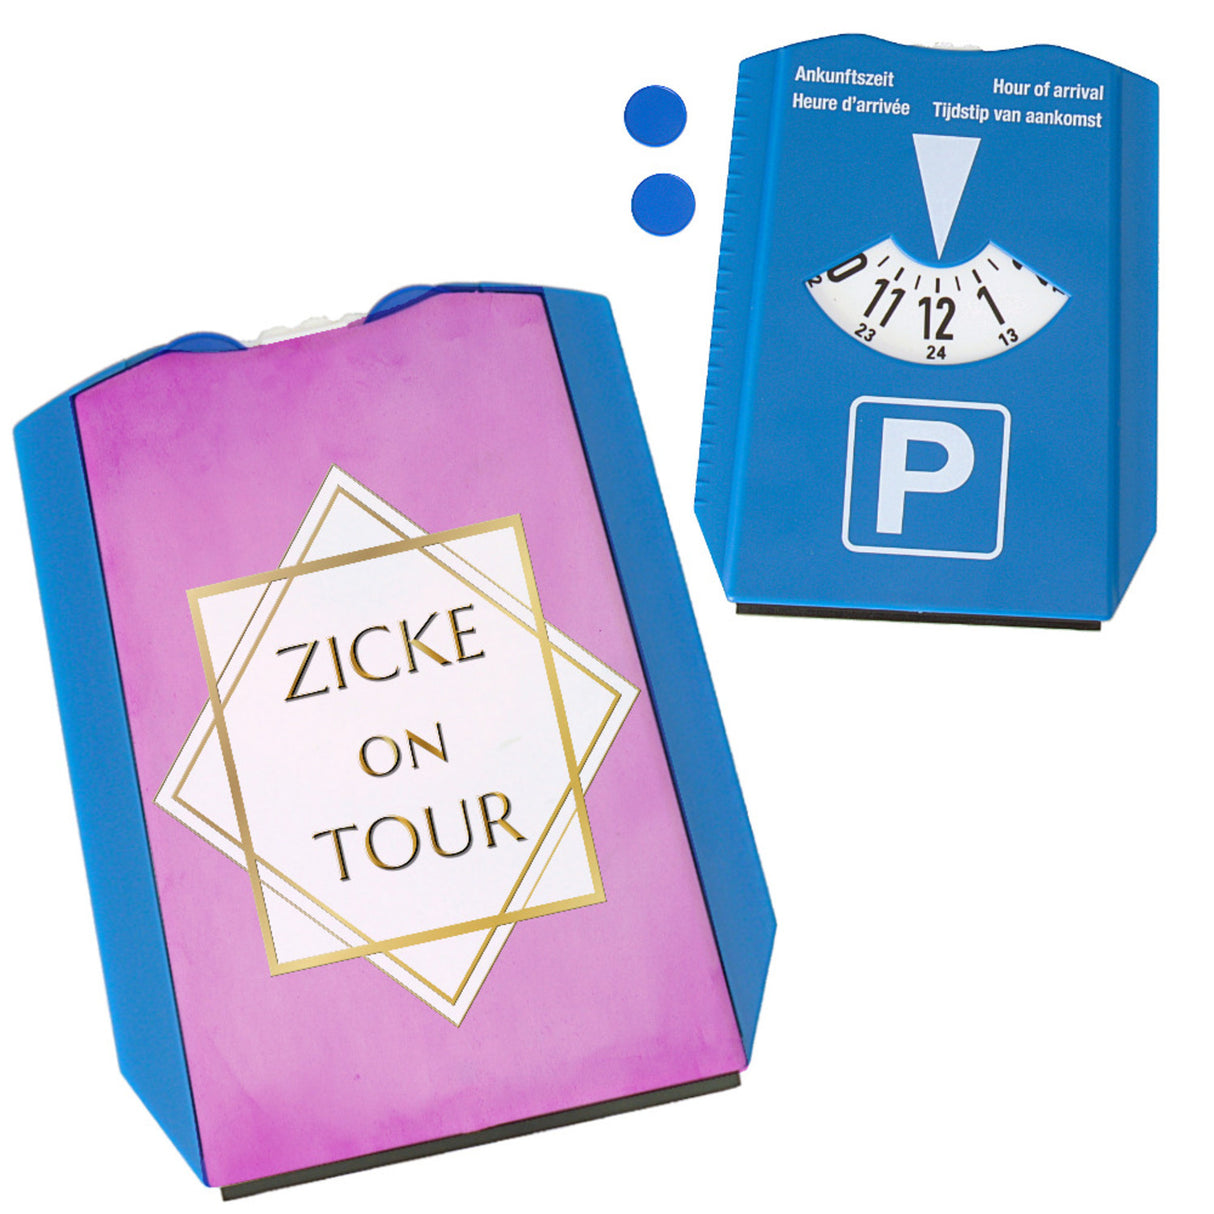 Zicke on Tour Parkscheibe mit Goldrahmen mit 2 Einkaufswagenchips